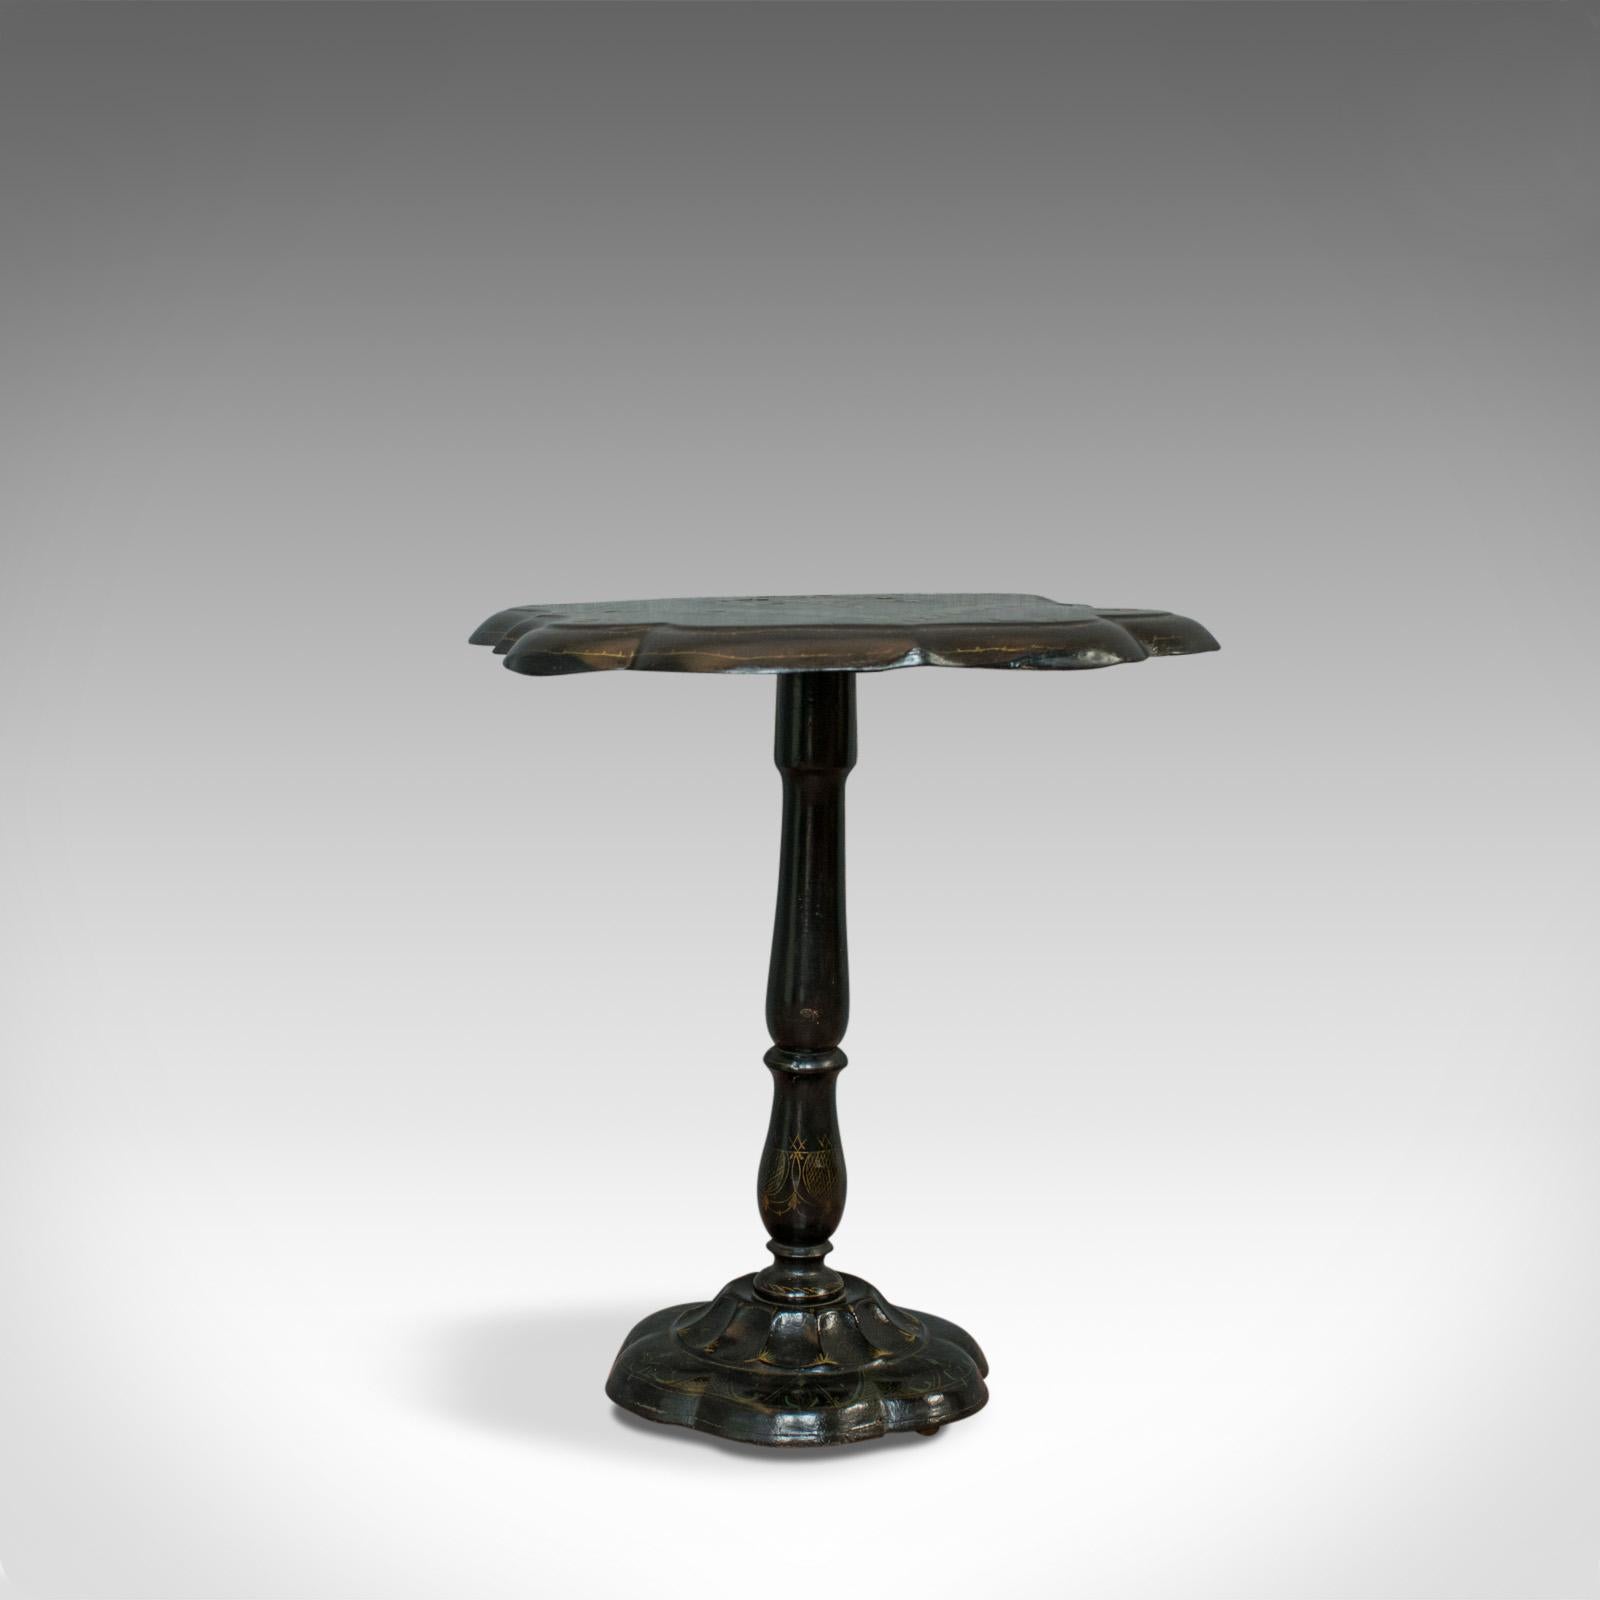 English Antique Table, Ebonized, Papier Mache, Mother of Pearl, Side, Lamp, Wine, Tilt